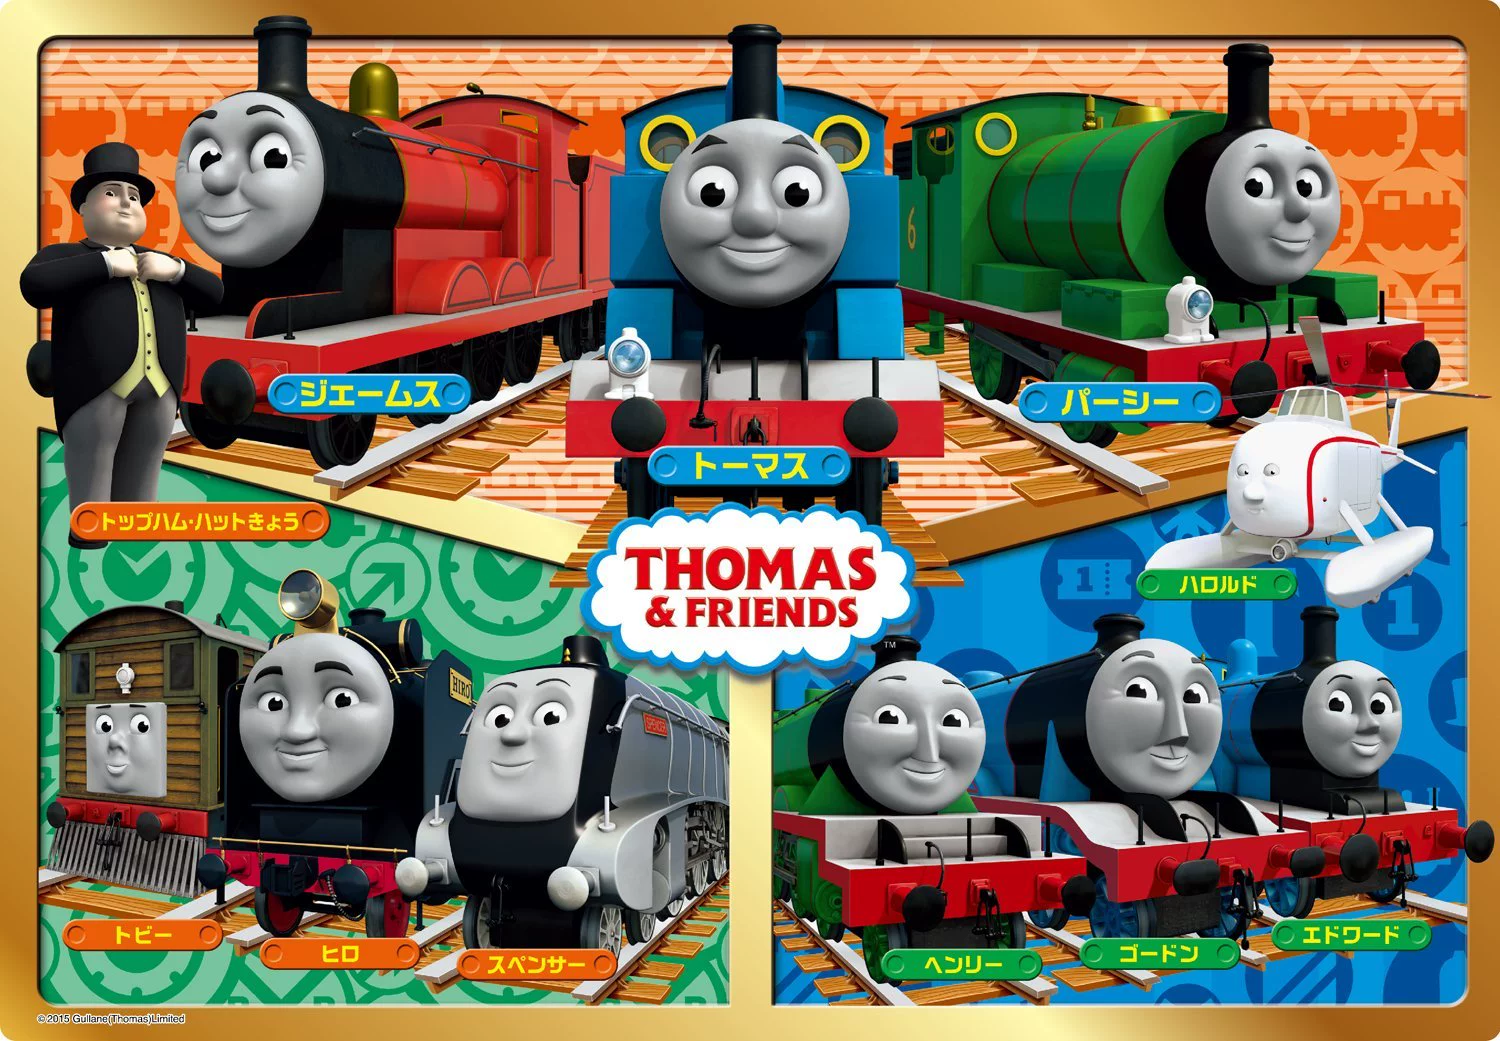 托马斯火车拼图示意图_托马斯火车拼图下载_托马斯火车拼图